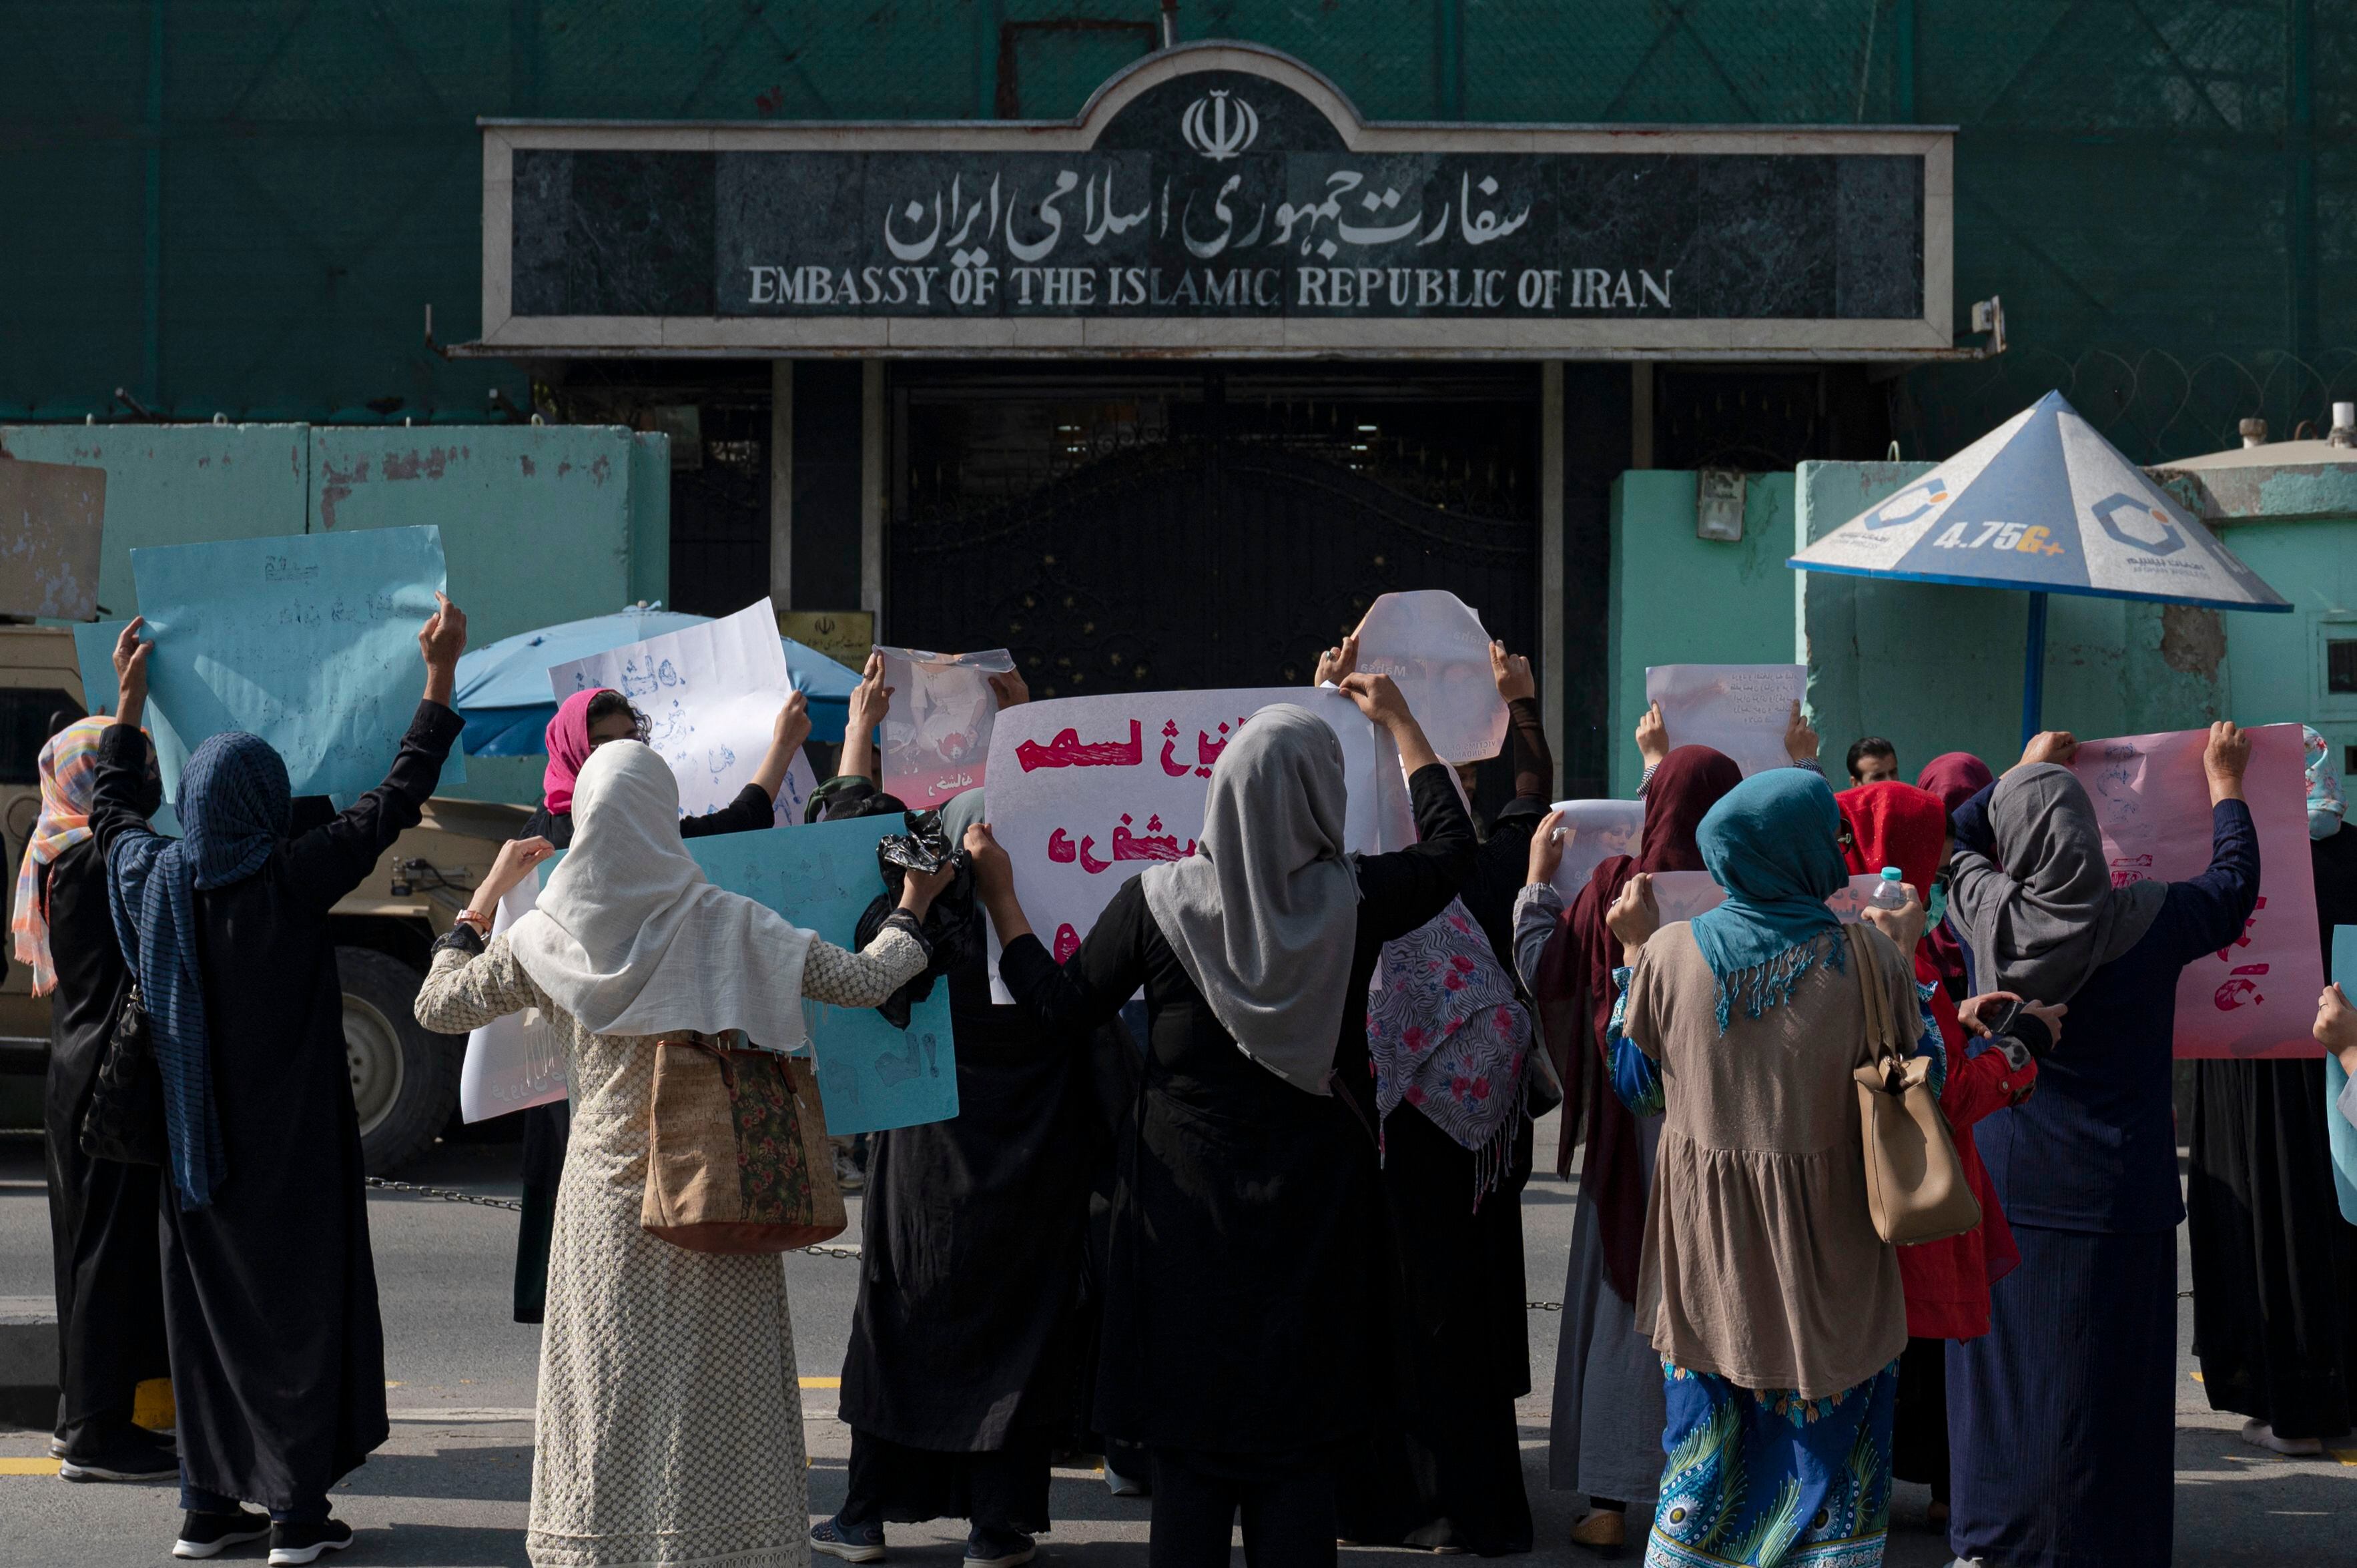 Talibanes irrumpen con disparos manifestación de mujeres que apoyan las protestas en Irán